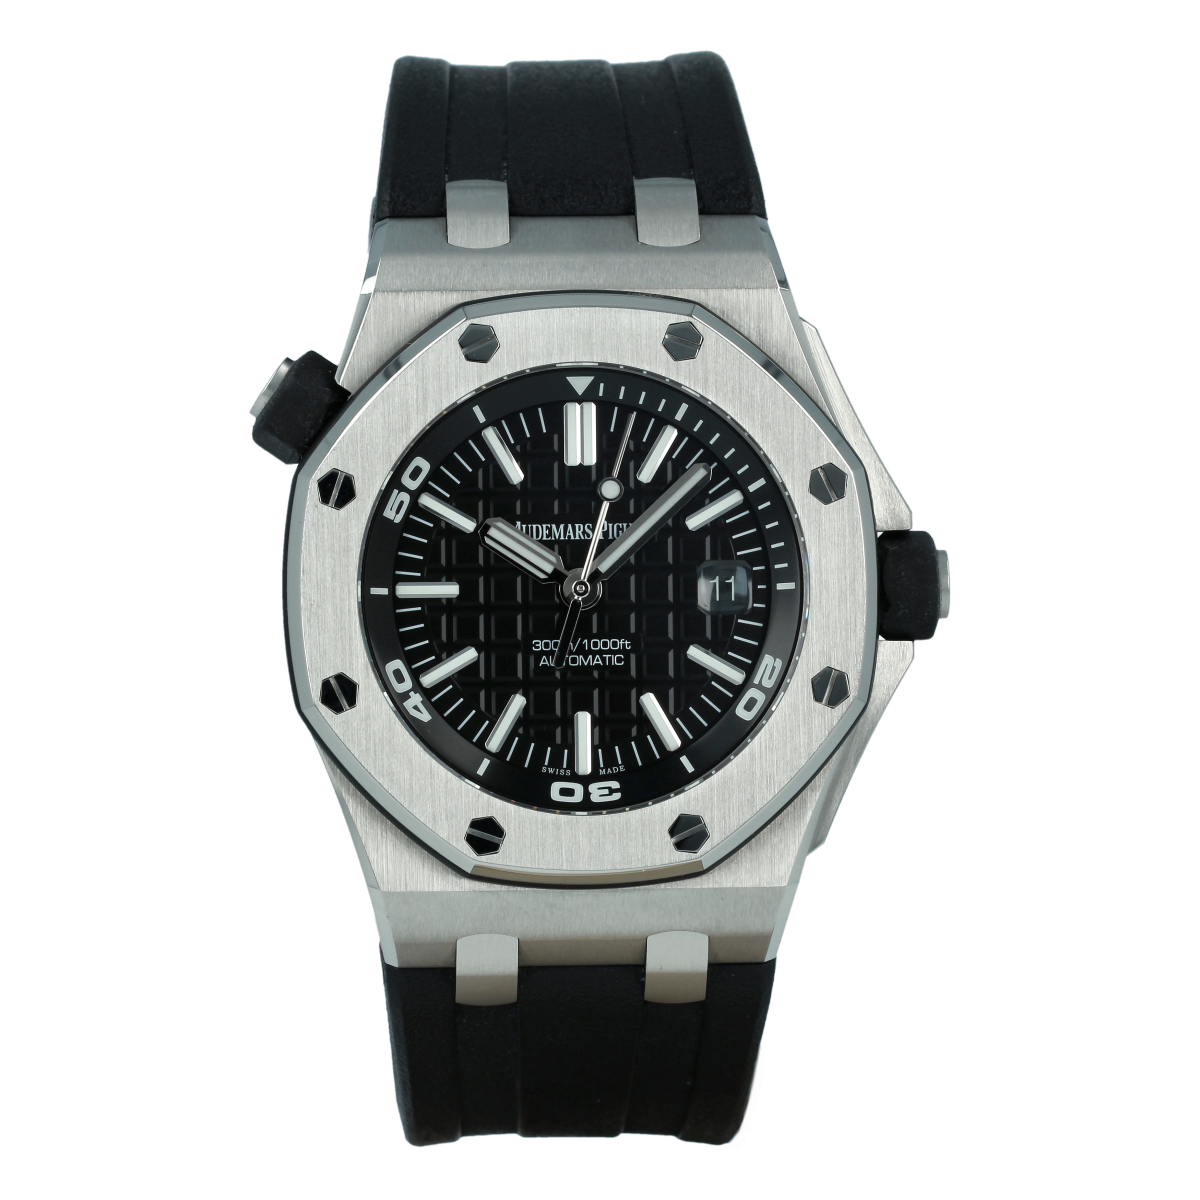 Audemars Piguet Royal Oak Offshore Diver 15710ST 42mm Black Dial *With Box* | Buy pre-owned Audemars Piguet watches